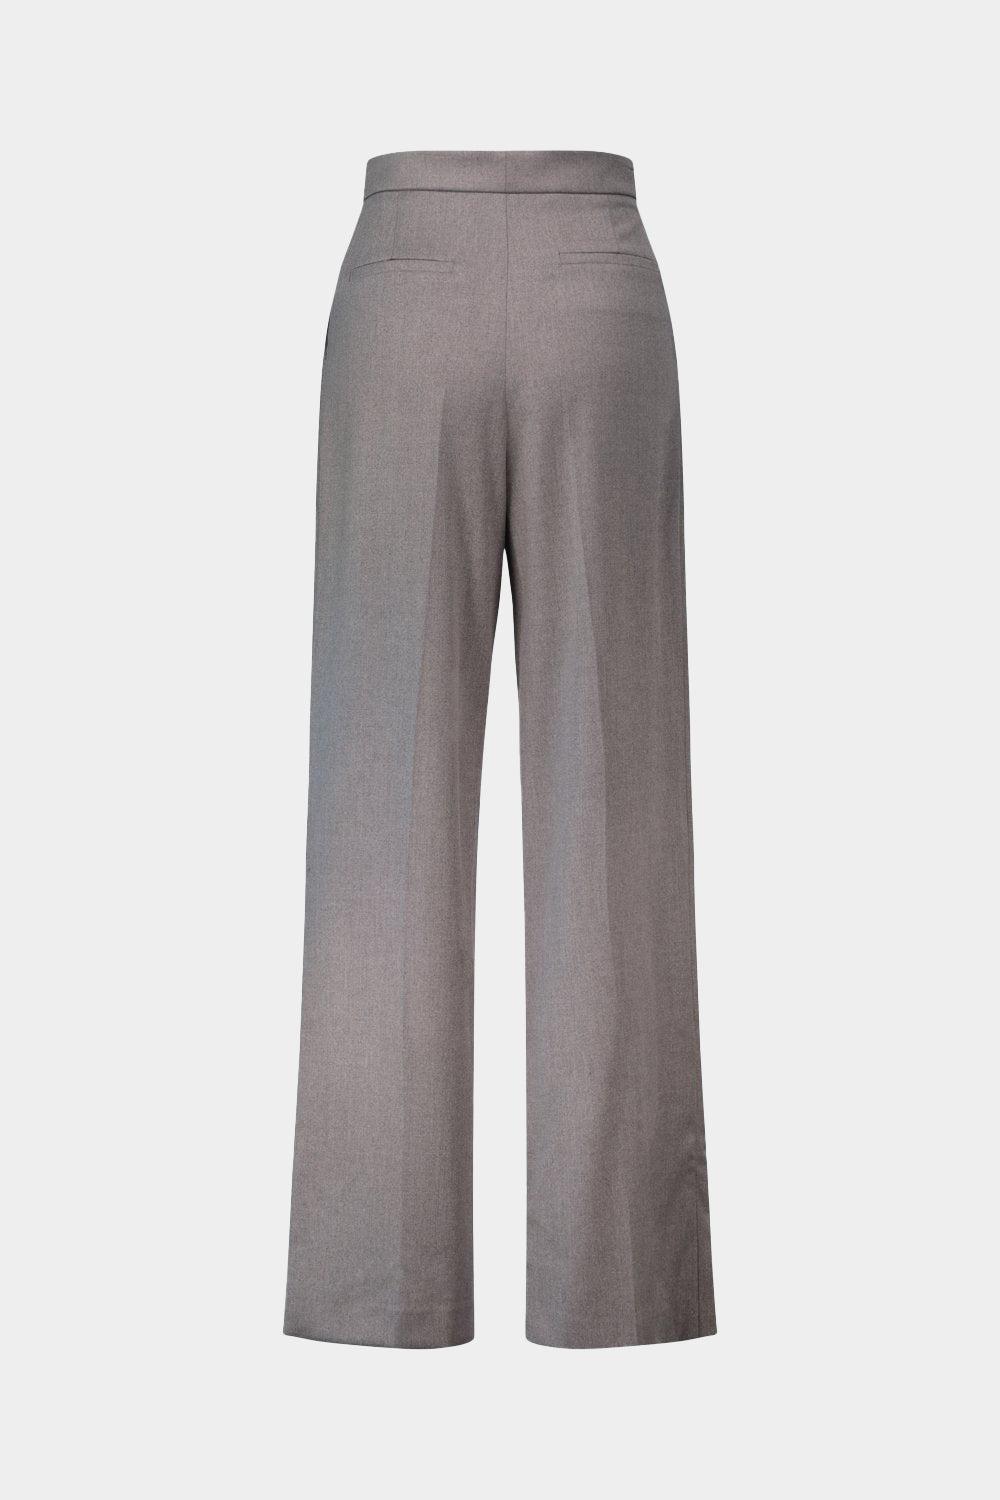 מכנסי מעטפת מותן גבוה לנשים רגל רחבה LIU JO Vendome online | ונדום .